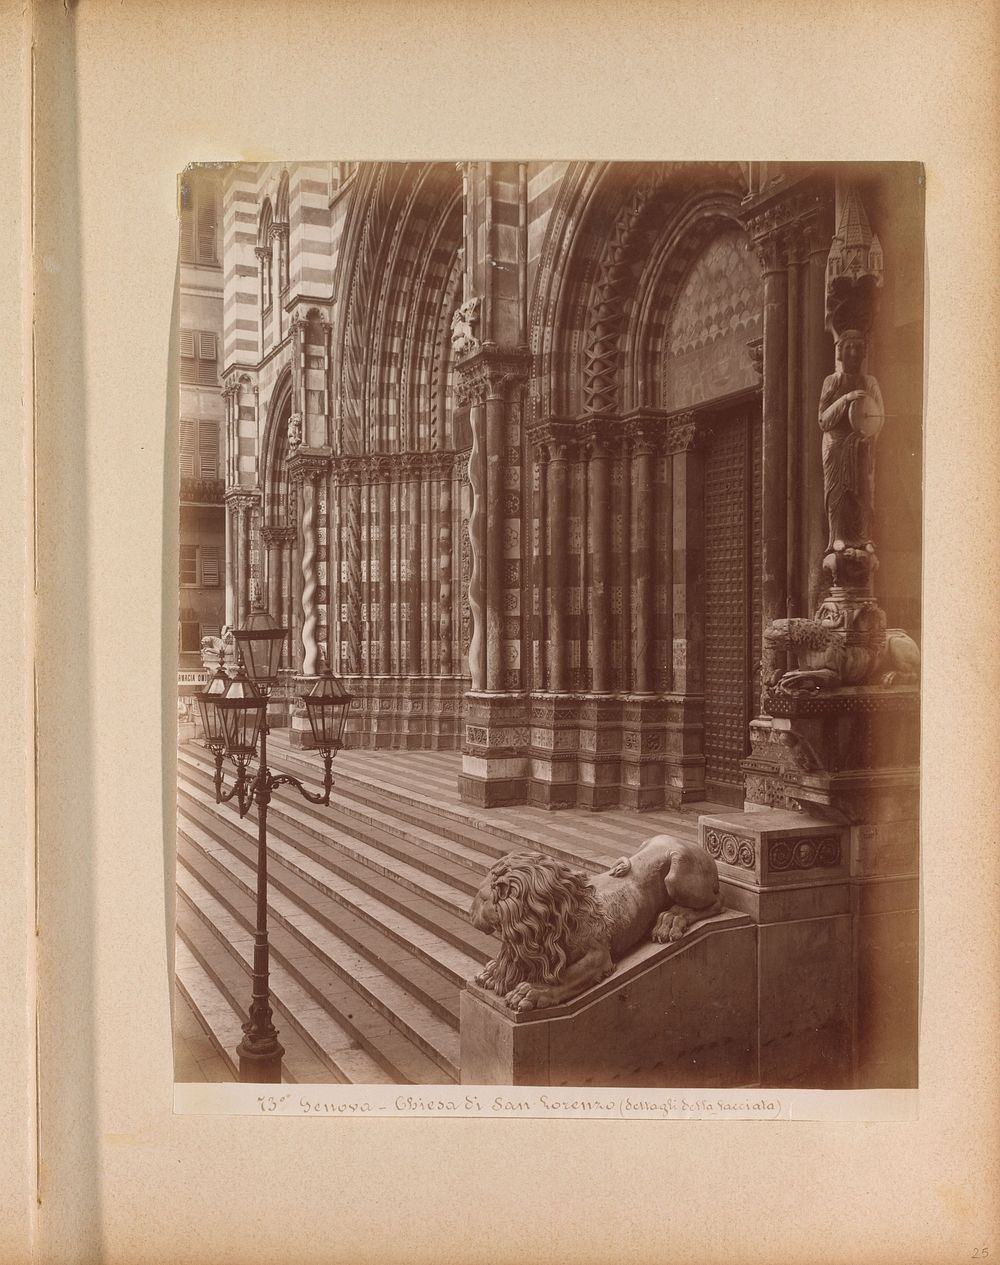 Portaal, trappen en leeuwenbeeld van de Chiesa di San Lorenzo te Genua (c. 1870 - c. 1900) by anonymous